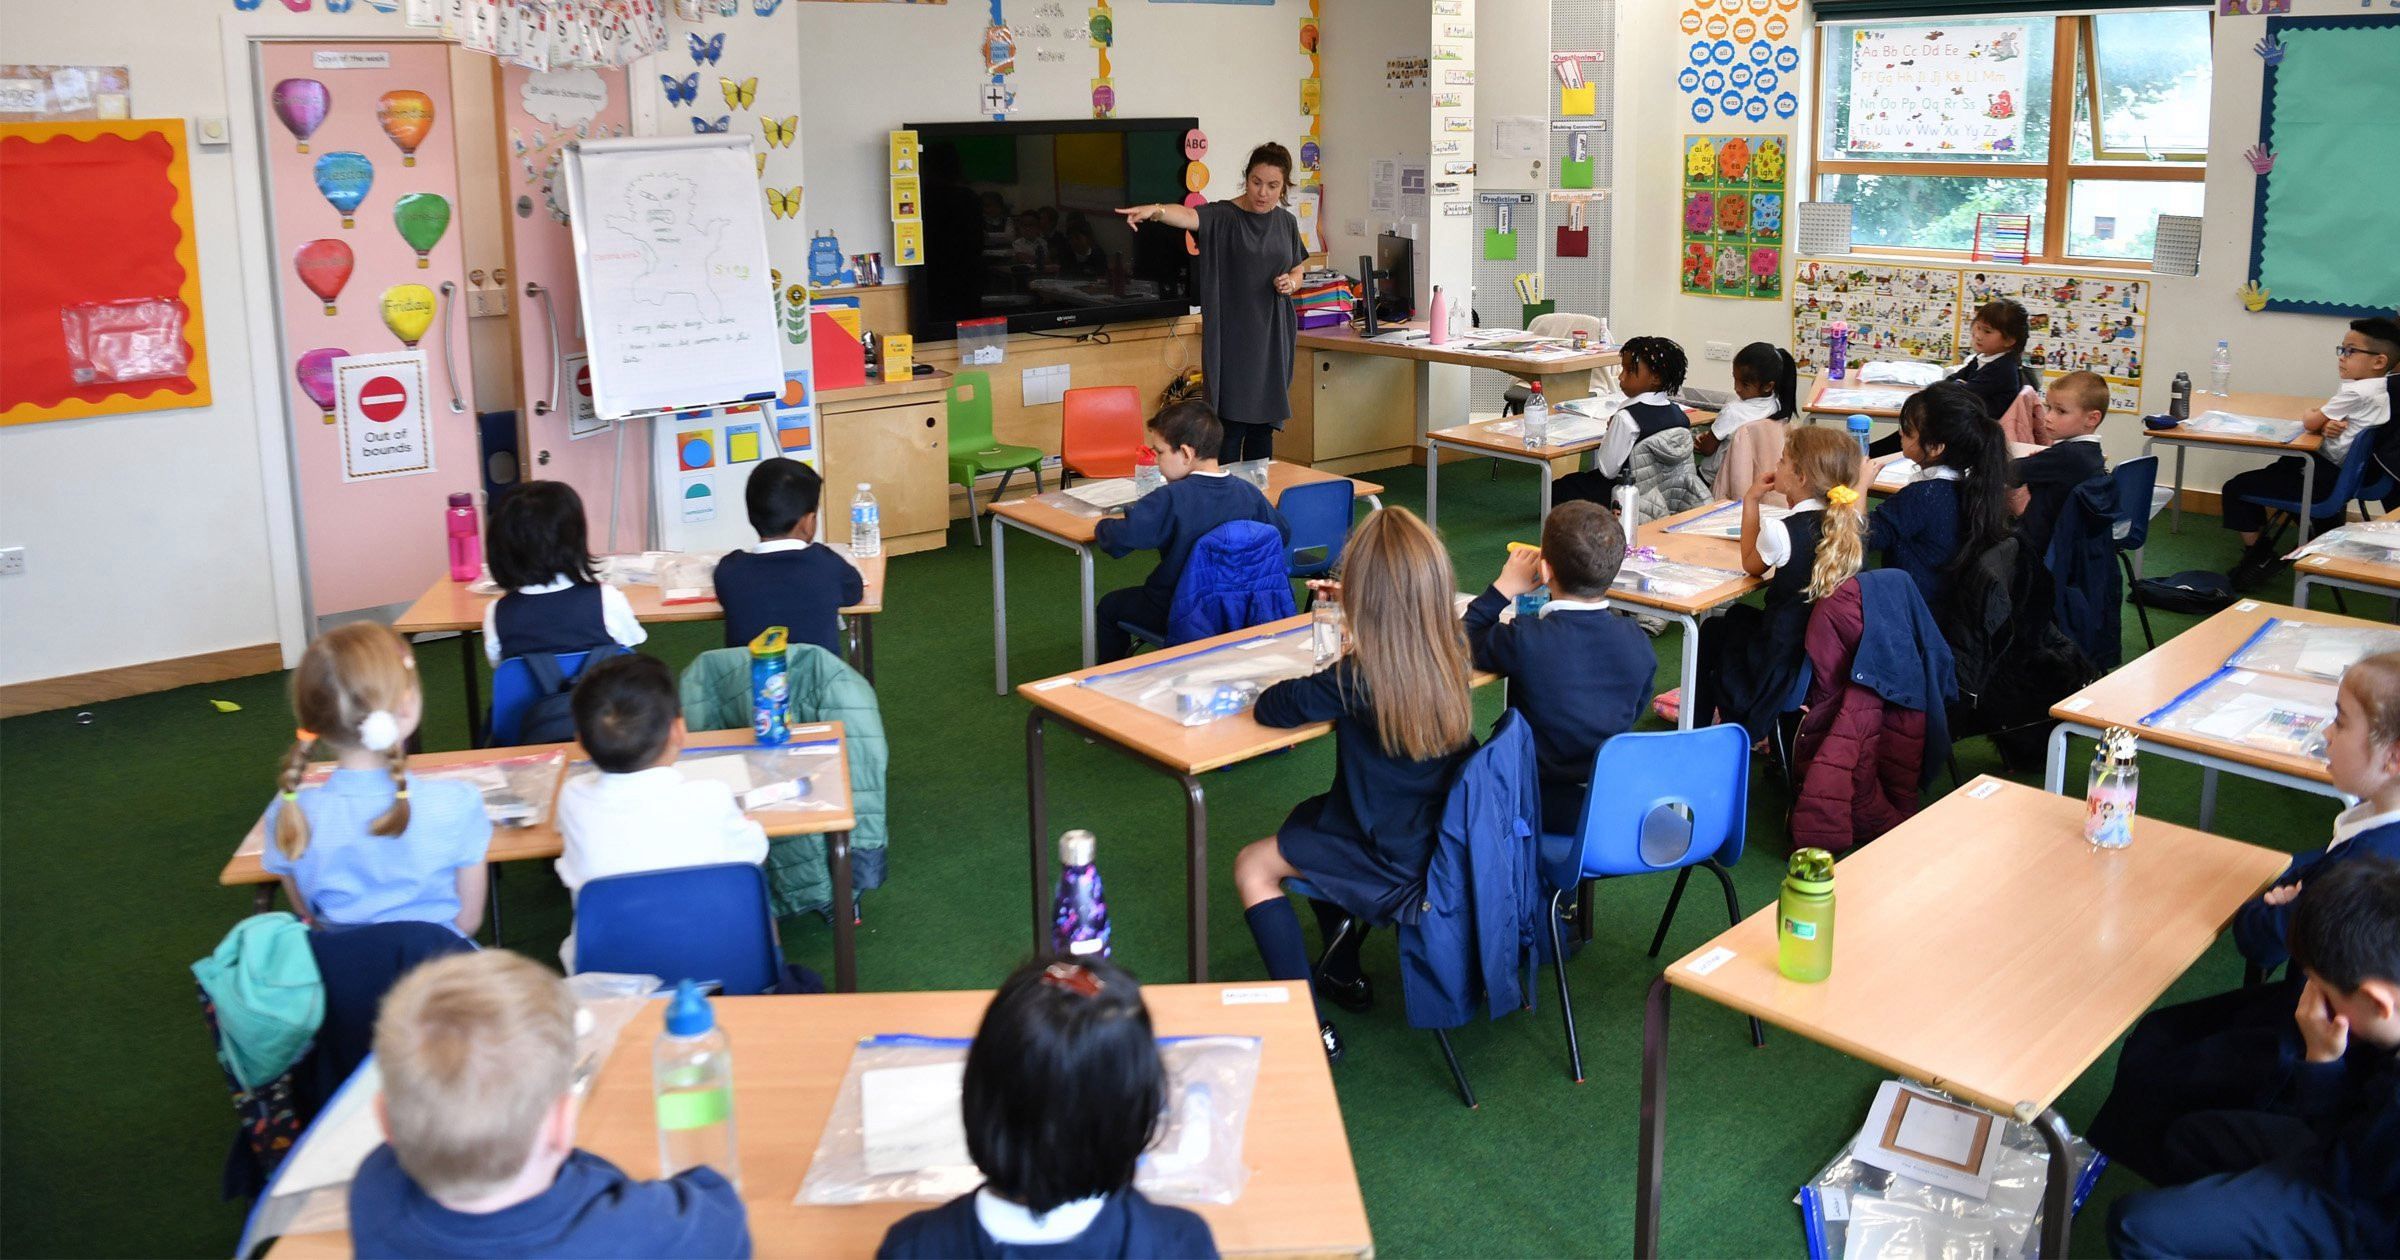 Интересные задания и много каникул: факты о лондонской начальной школе